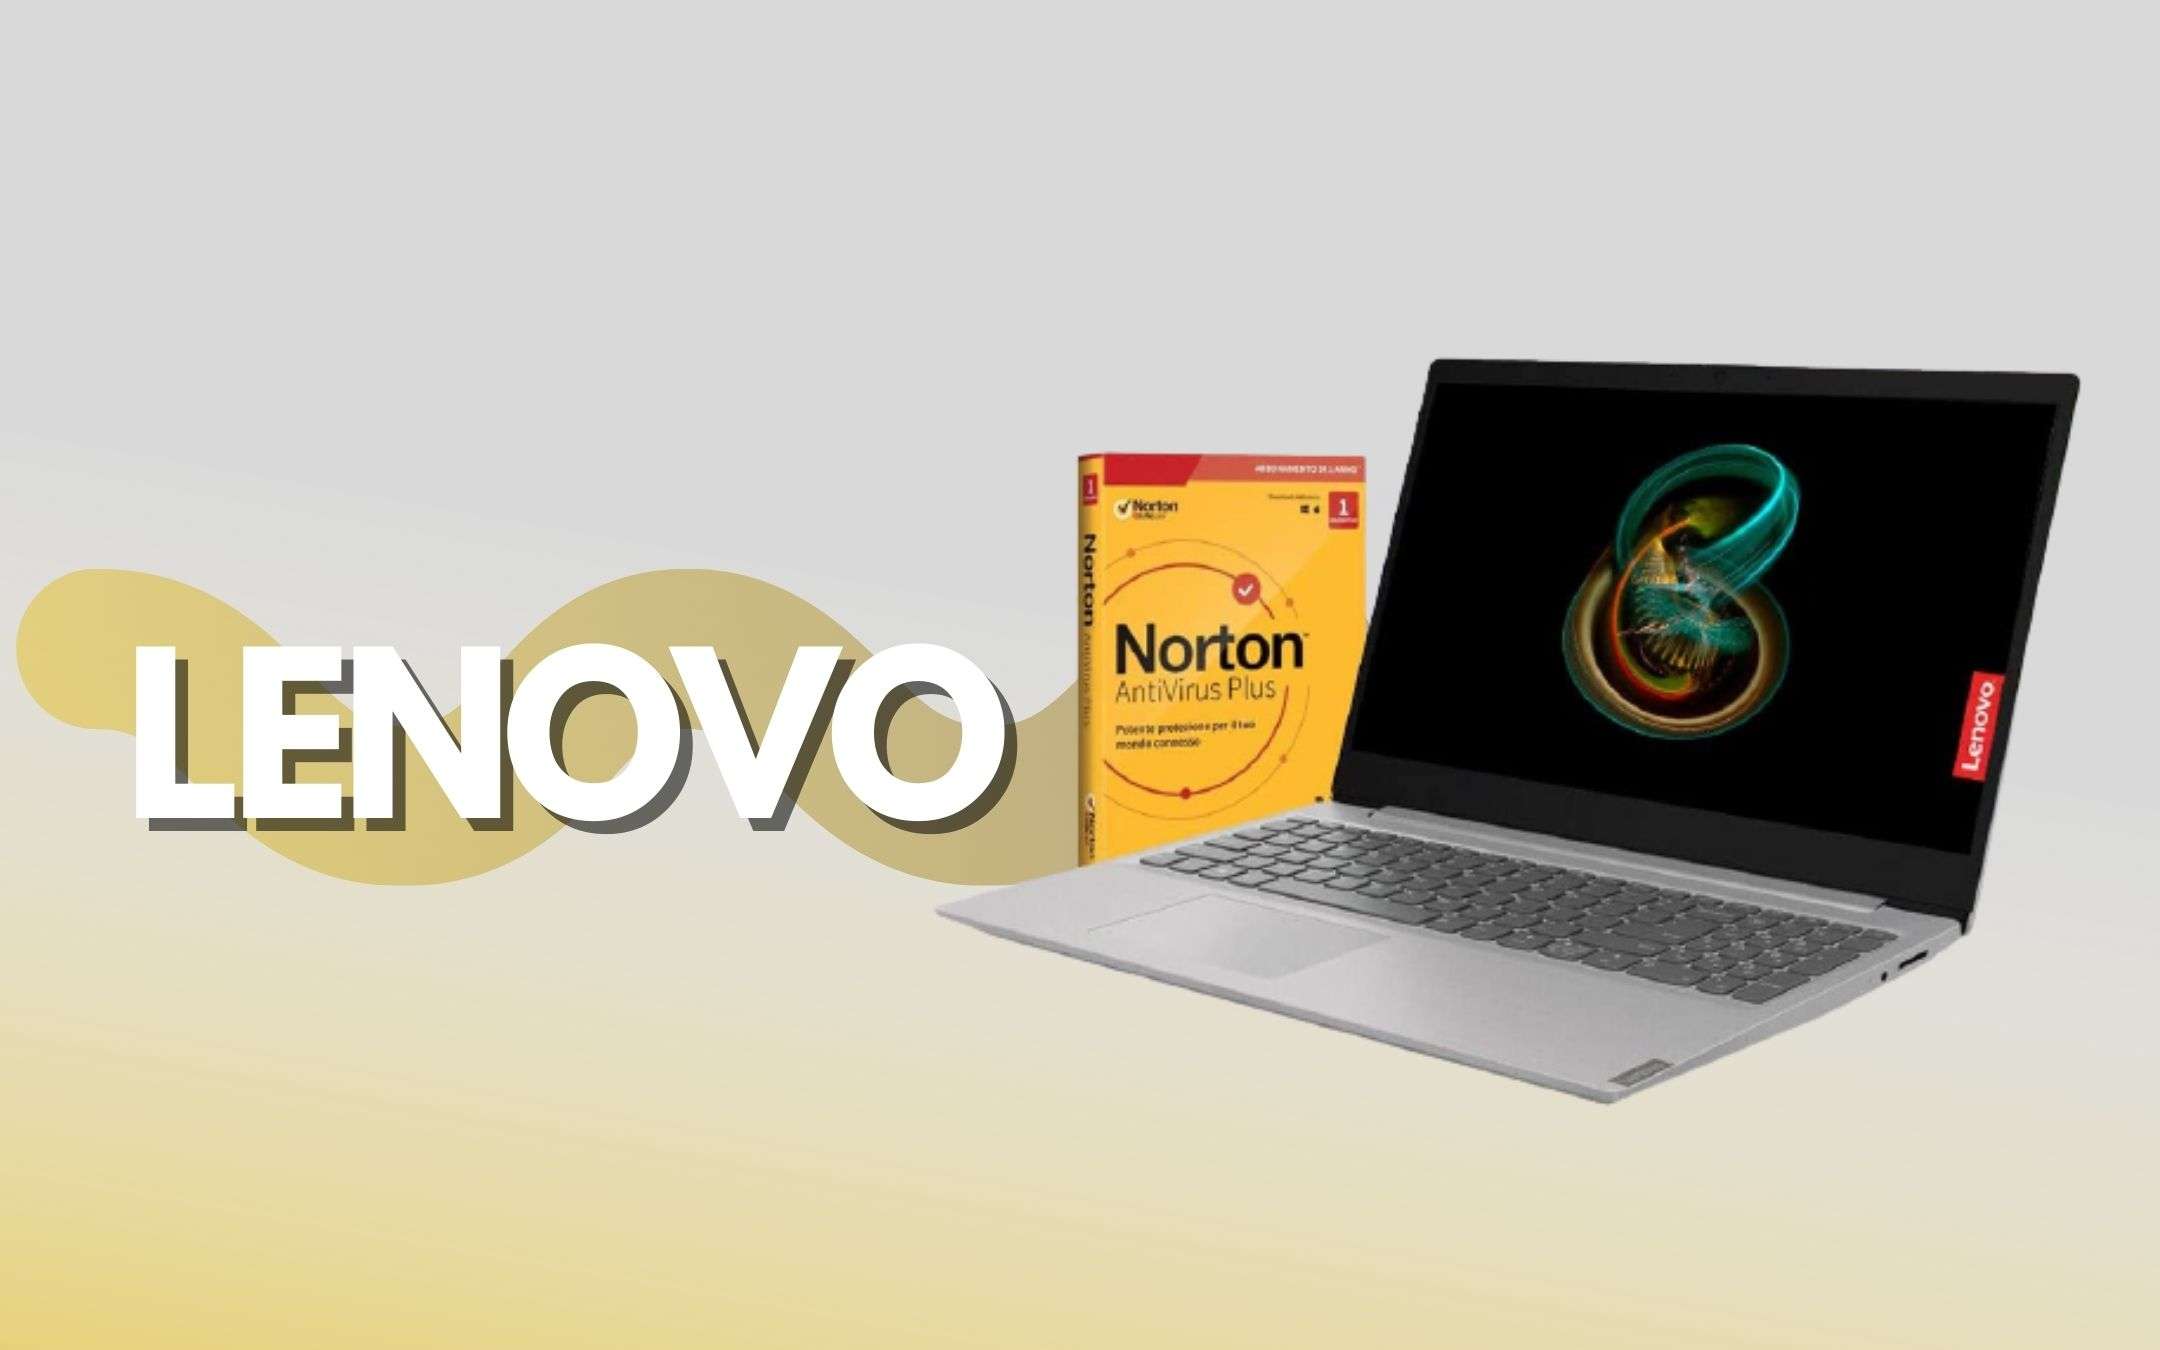 Lenovo Silver: il notebook è in offerta con Norton incluso